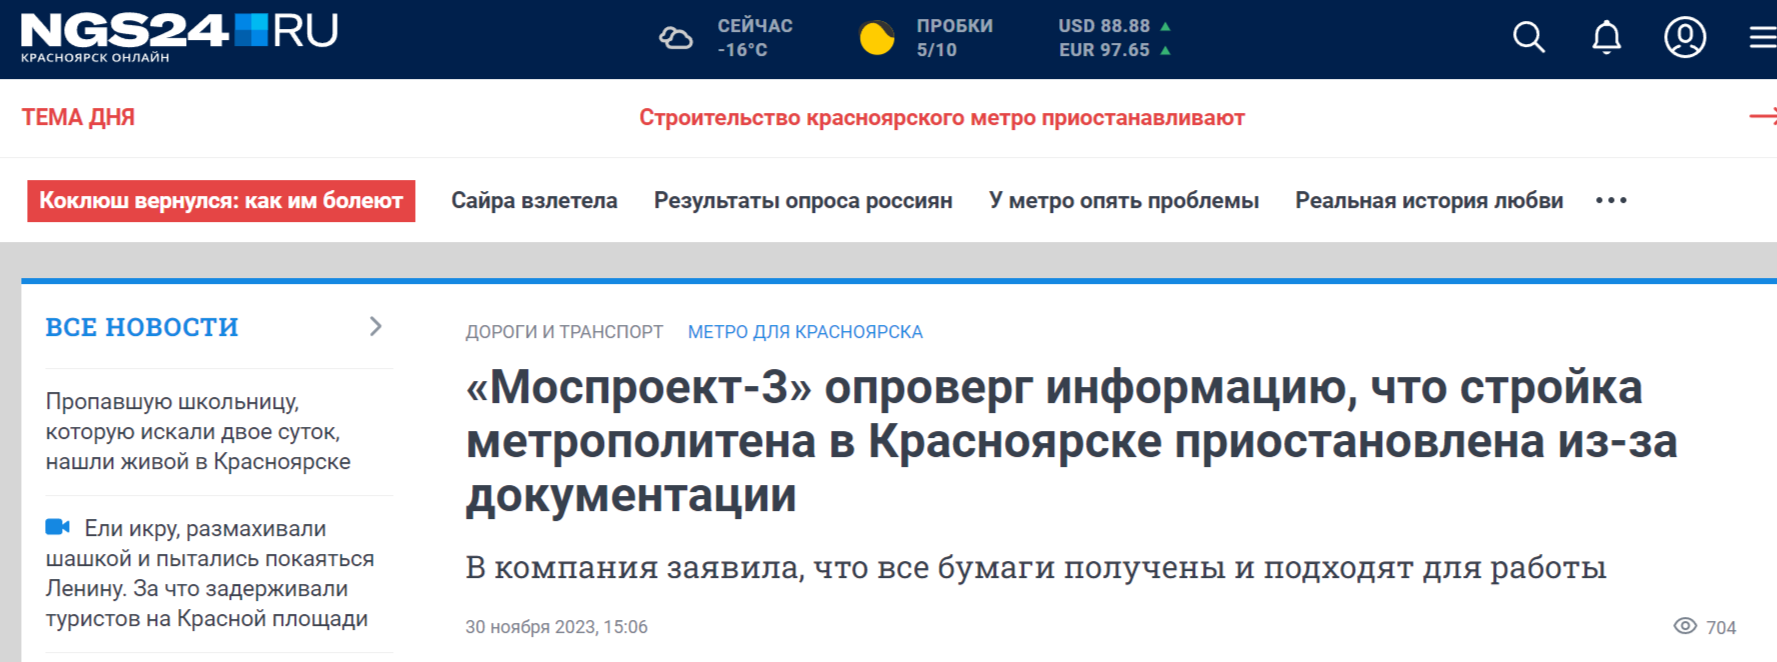 Моспроект-3 опроверг информацию что стройка метрополитена в Красноярске приостановлена из-за документации